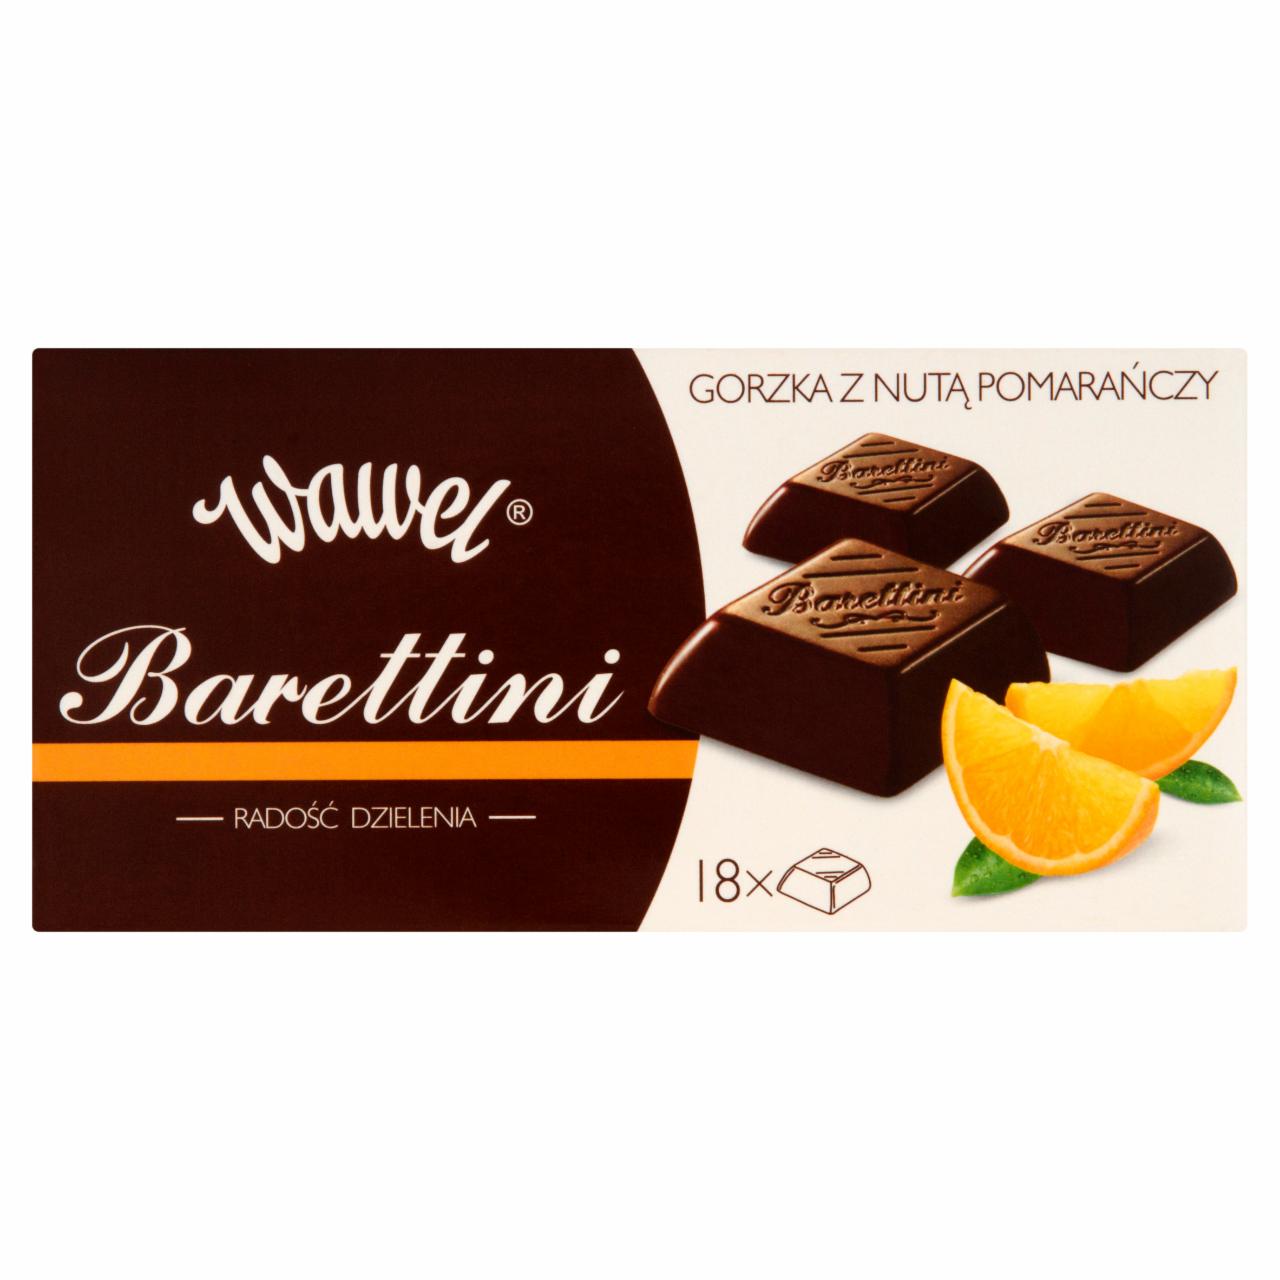 Zdjęcia - Wawel Barettini Czekolada gorzka z nutą pomarańczy 100 g